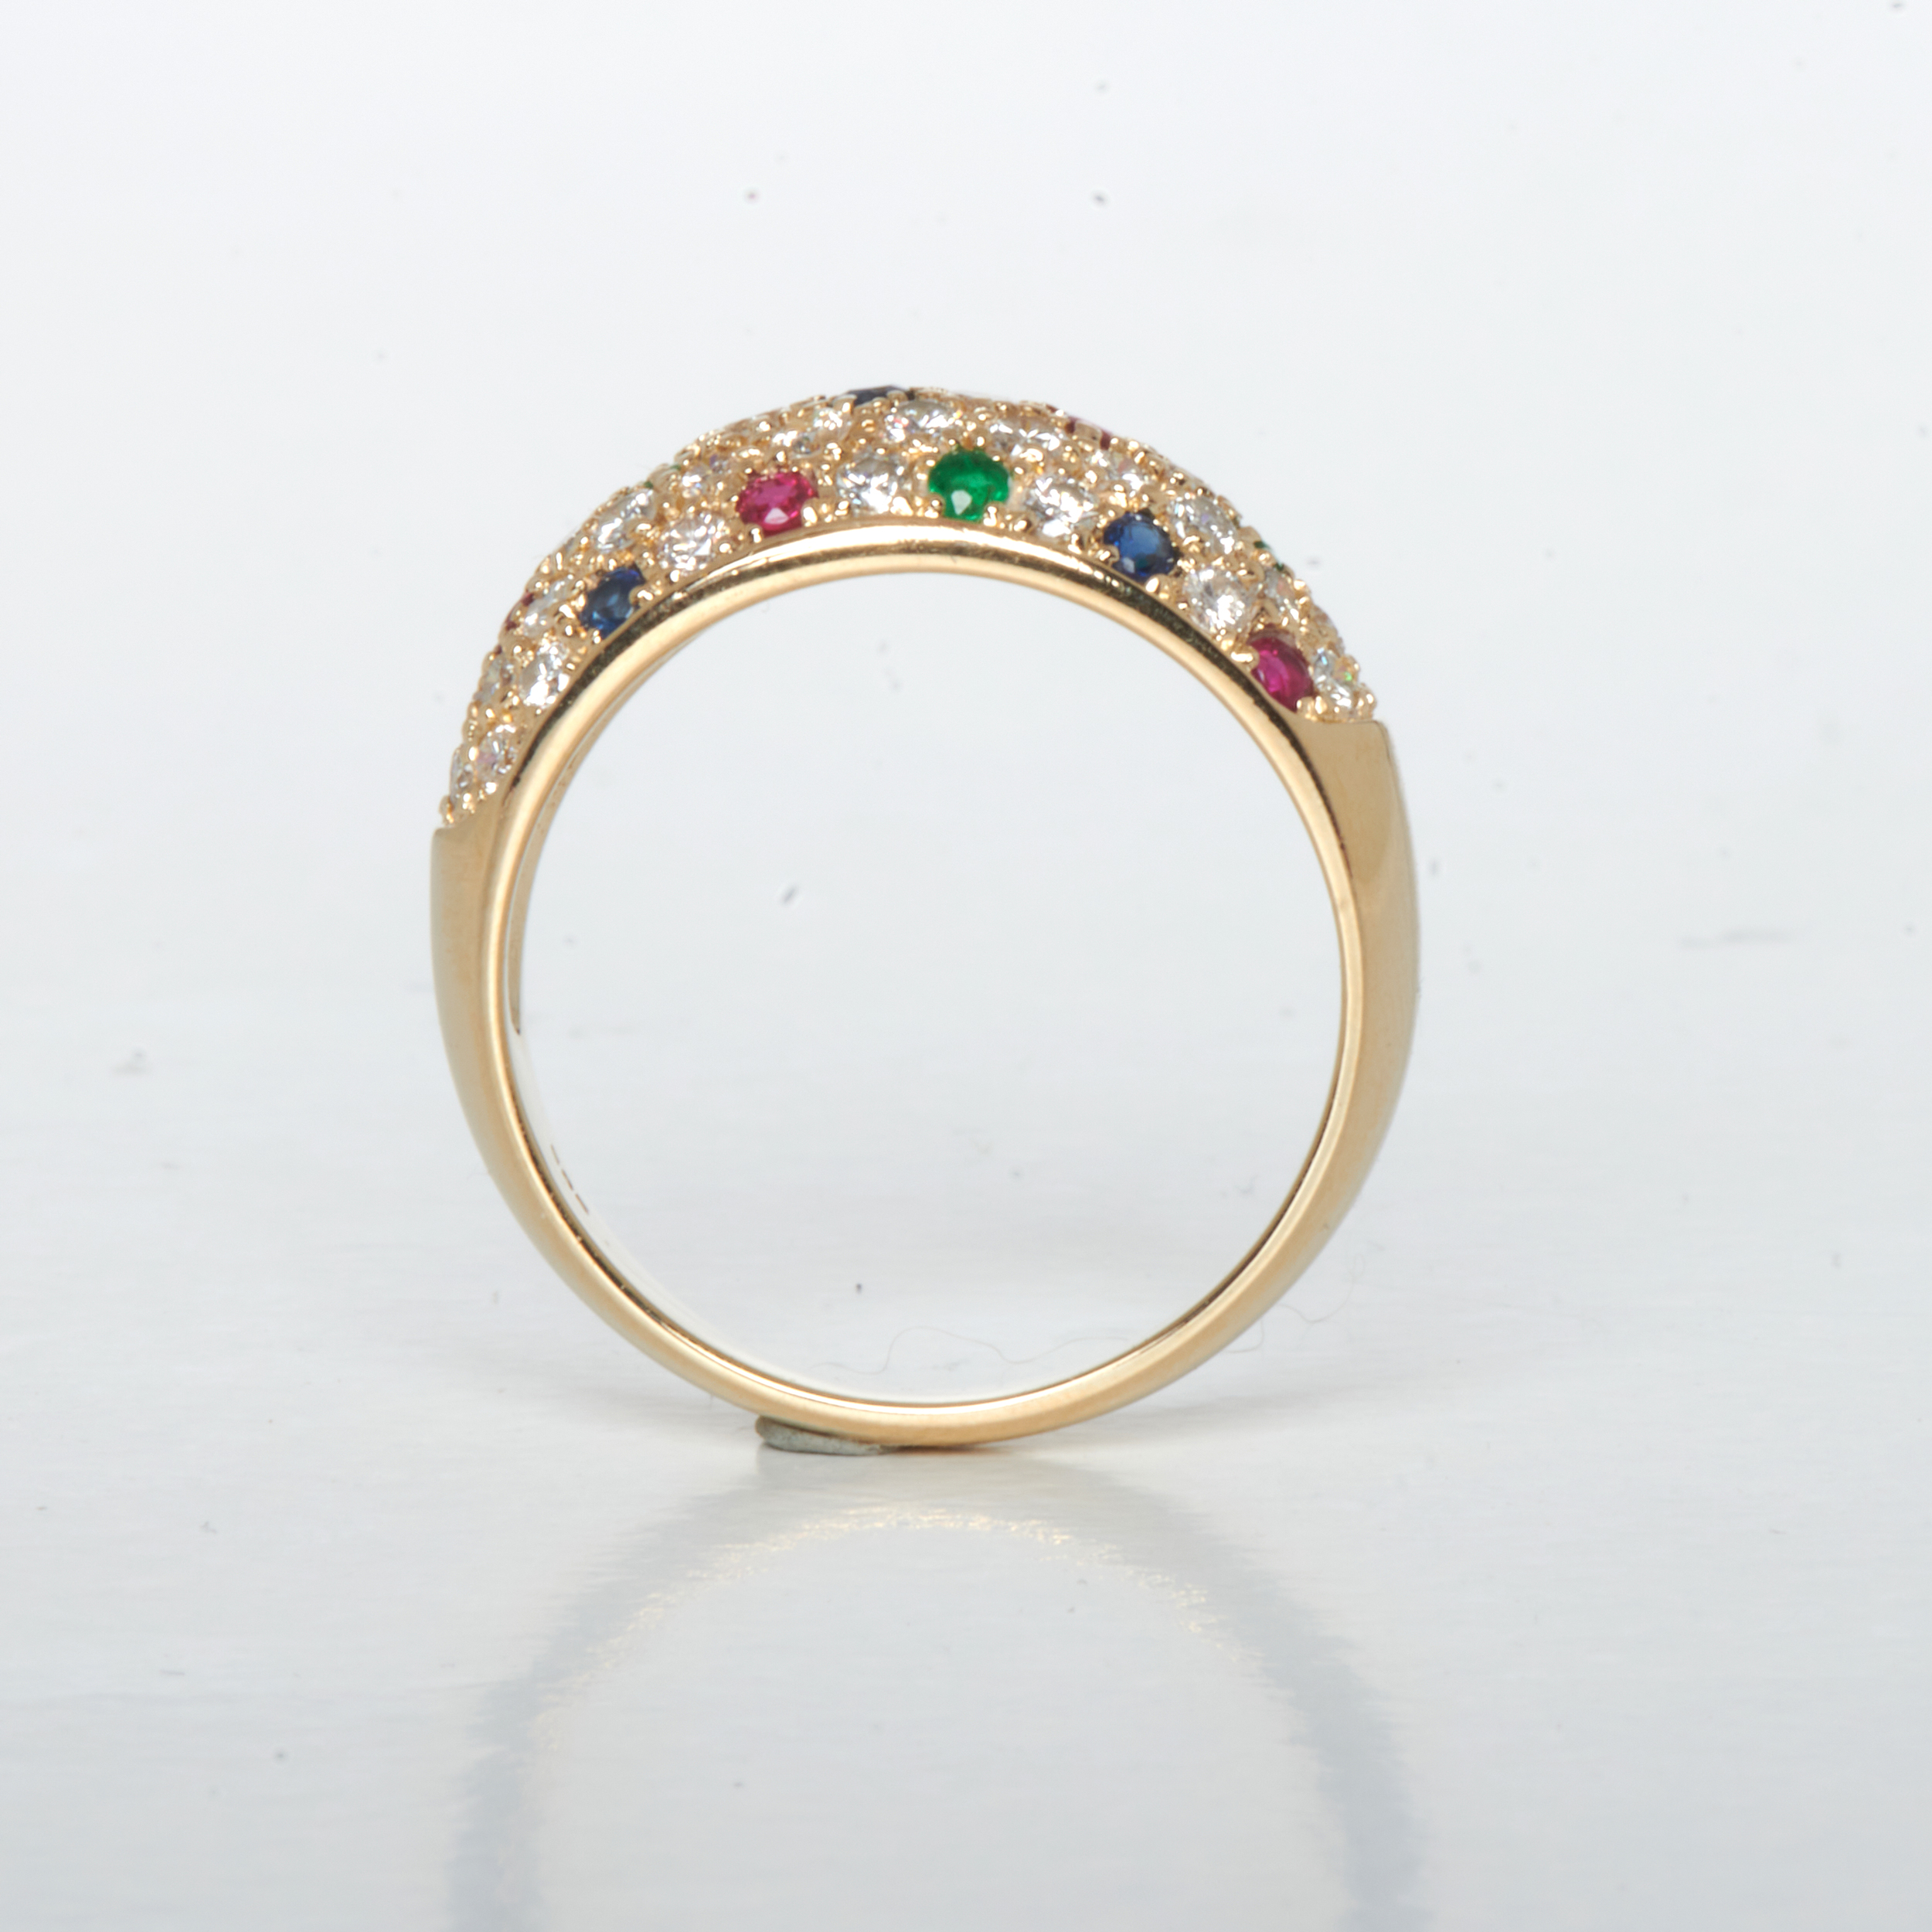 Ring aus 585 Gelbgold mit Smaragd, Saphir und Rubin, nachhaltiger second hand Schmuck perfekt aufgearbeitet